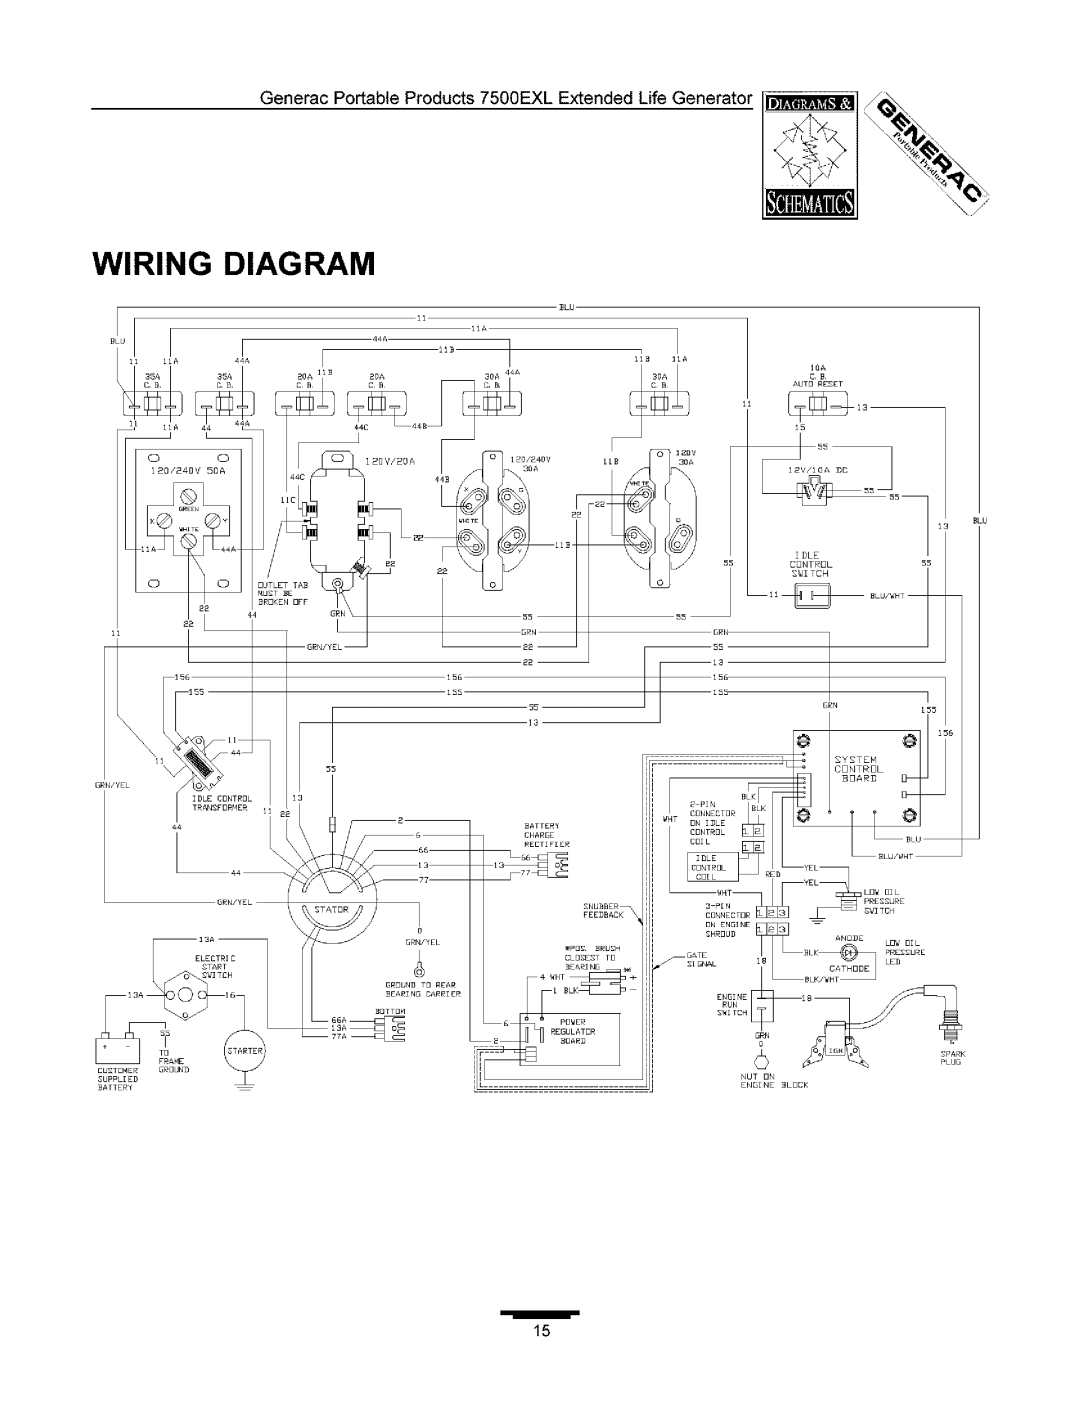 Generac 7500 Wiring Diagram, 10A C B AUTD RESET, 120V/20A120/240v IDLE CONTROL SWITCH GRN/YEL/x, Nut On Engine Block 